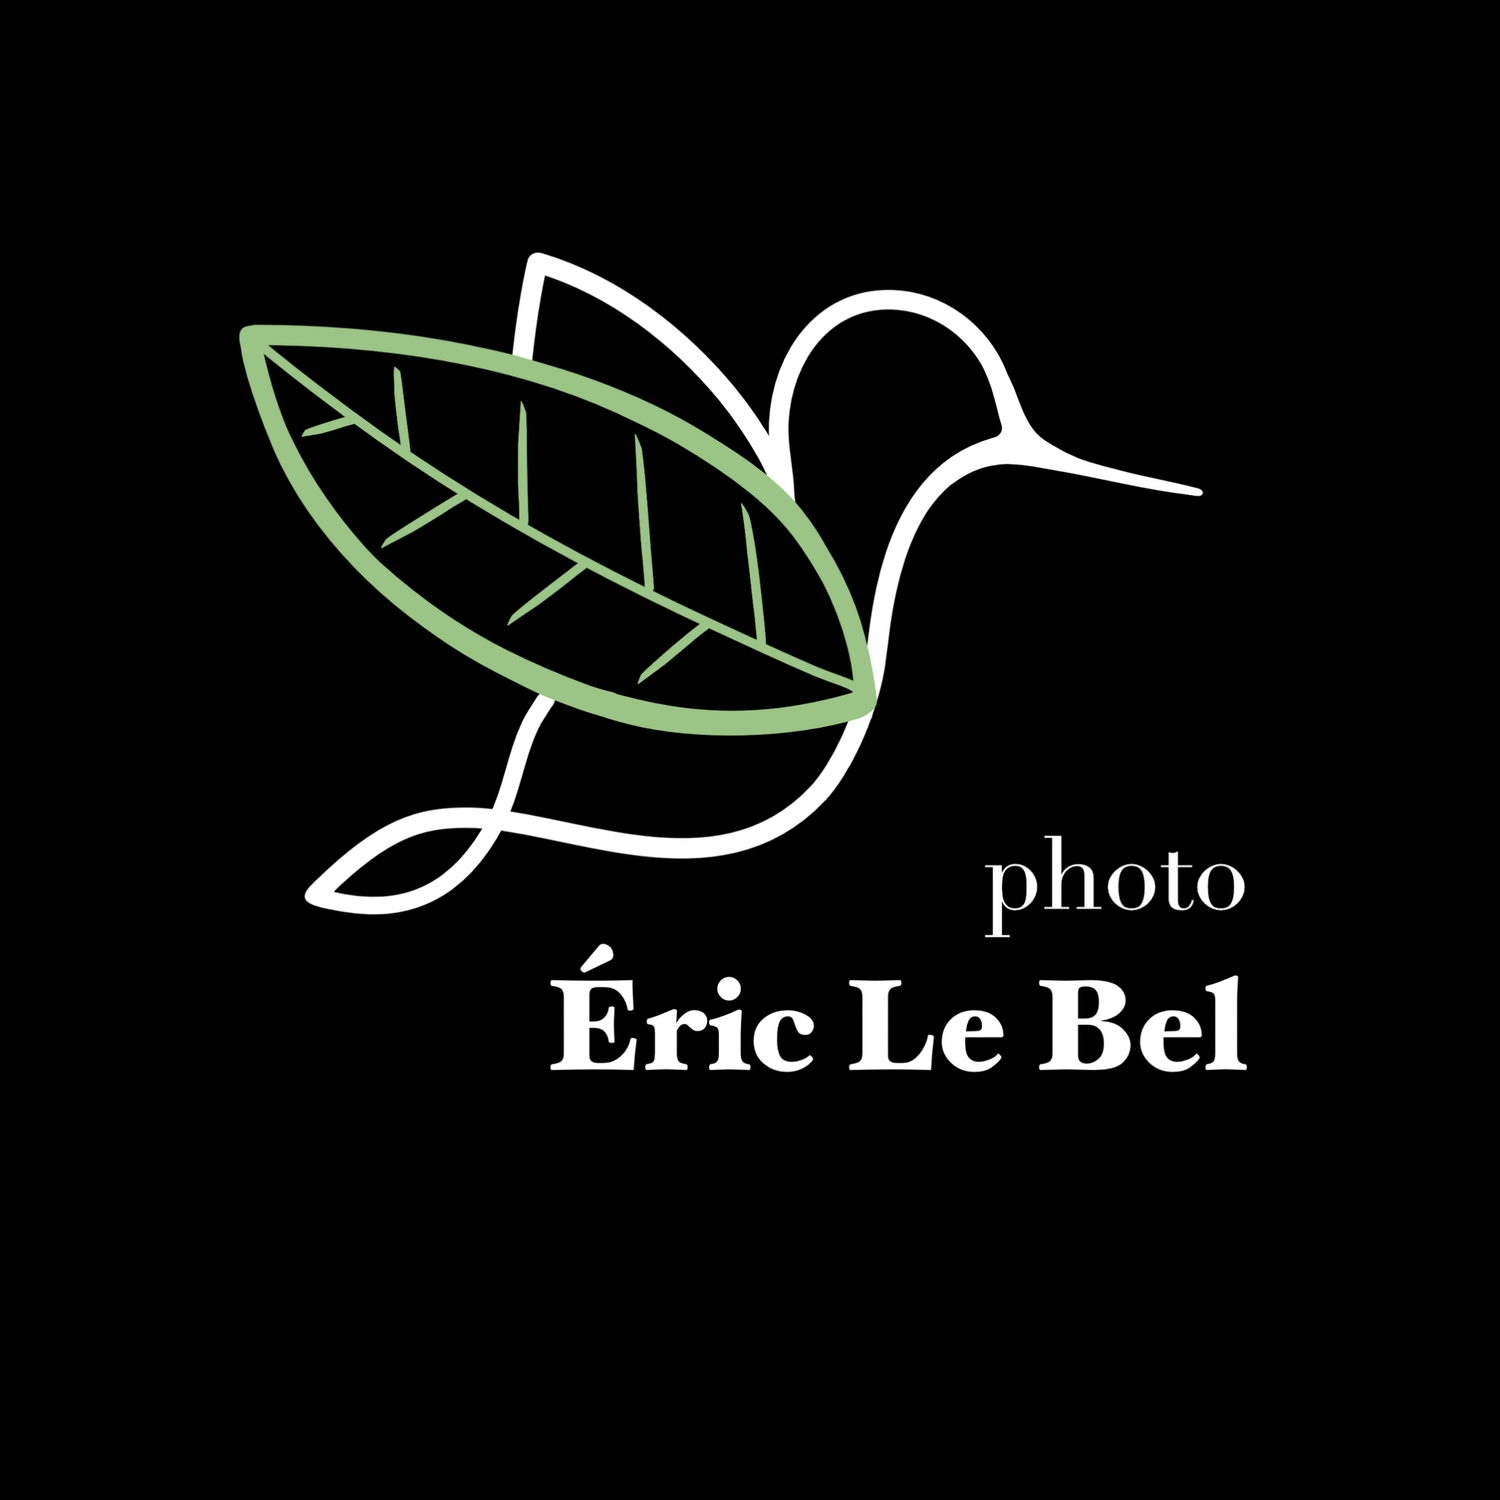 Eric Le Bel